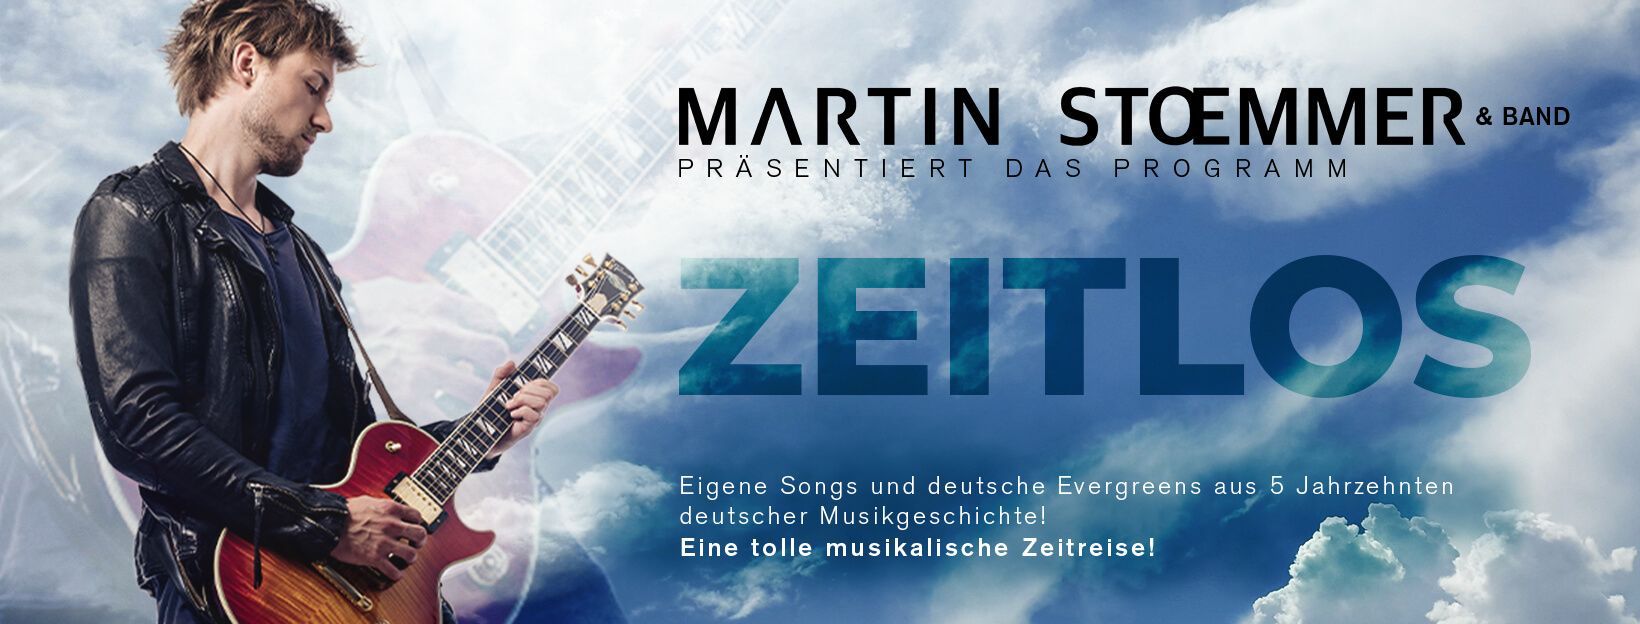 Martin Stoemmer Zeitlos